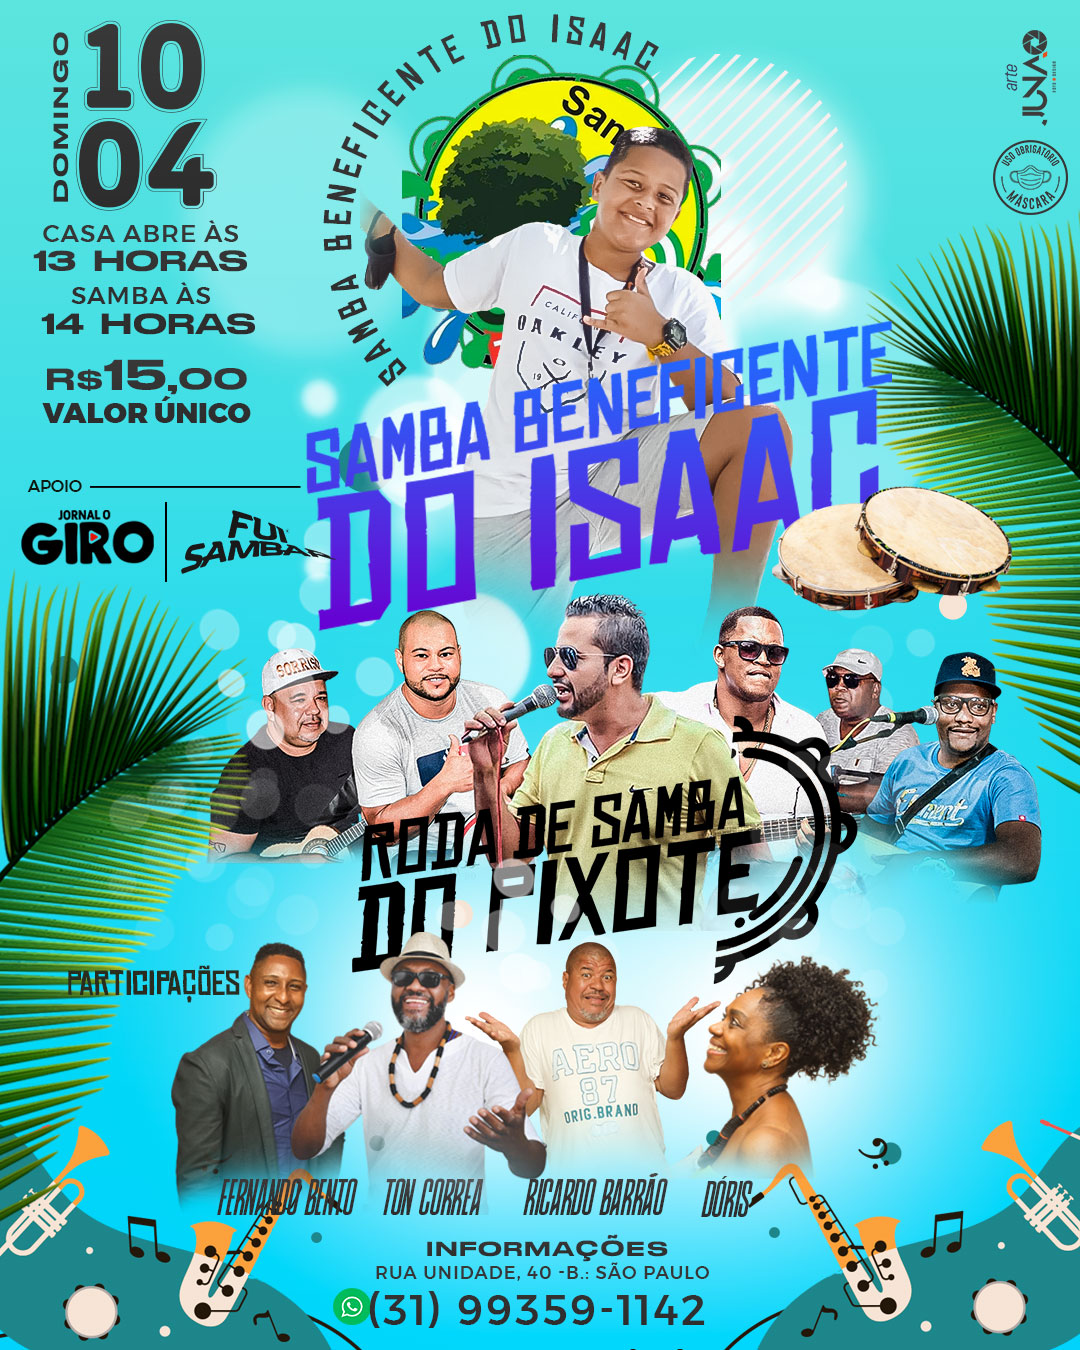 Samba beneficente do “Isaac” dia 10 de abril